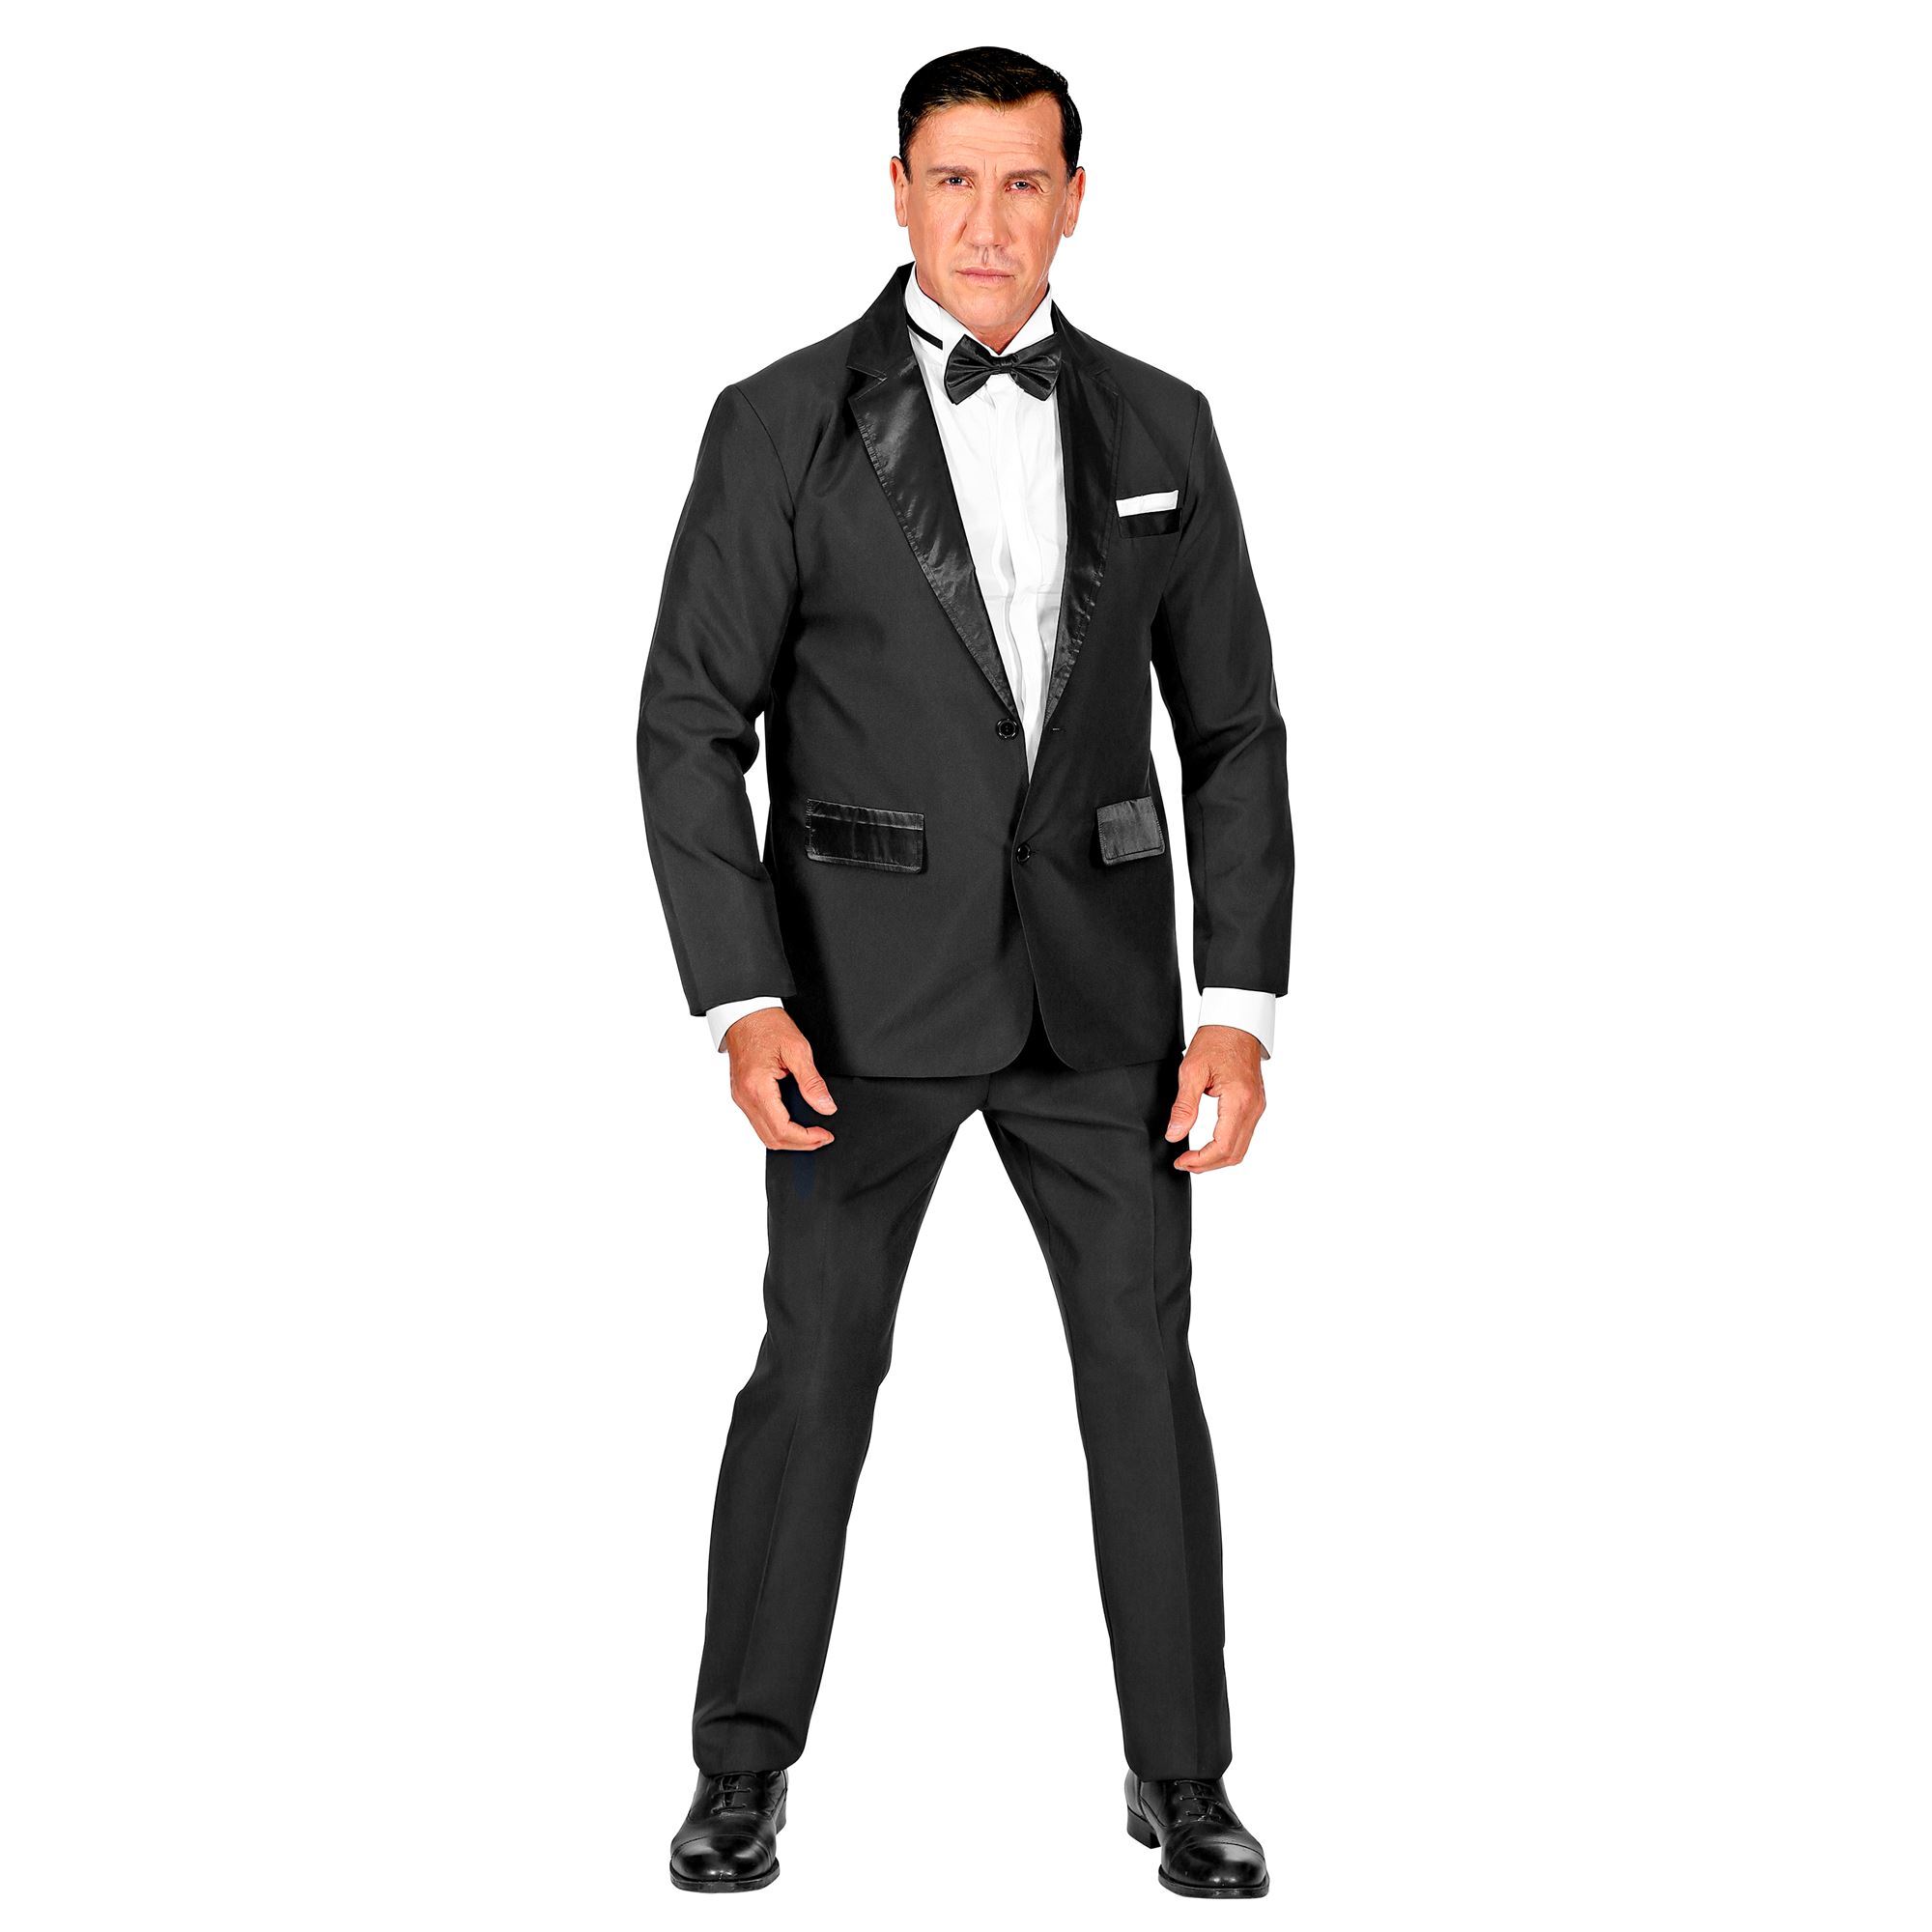 007 zwart smoking kostuum voor een bond feest